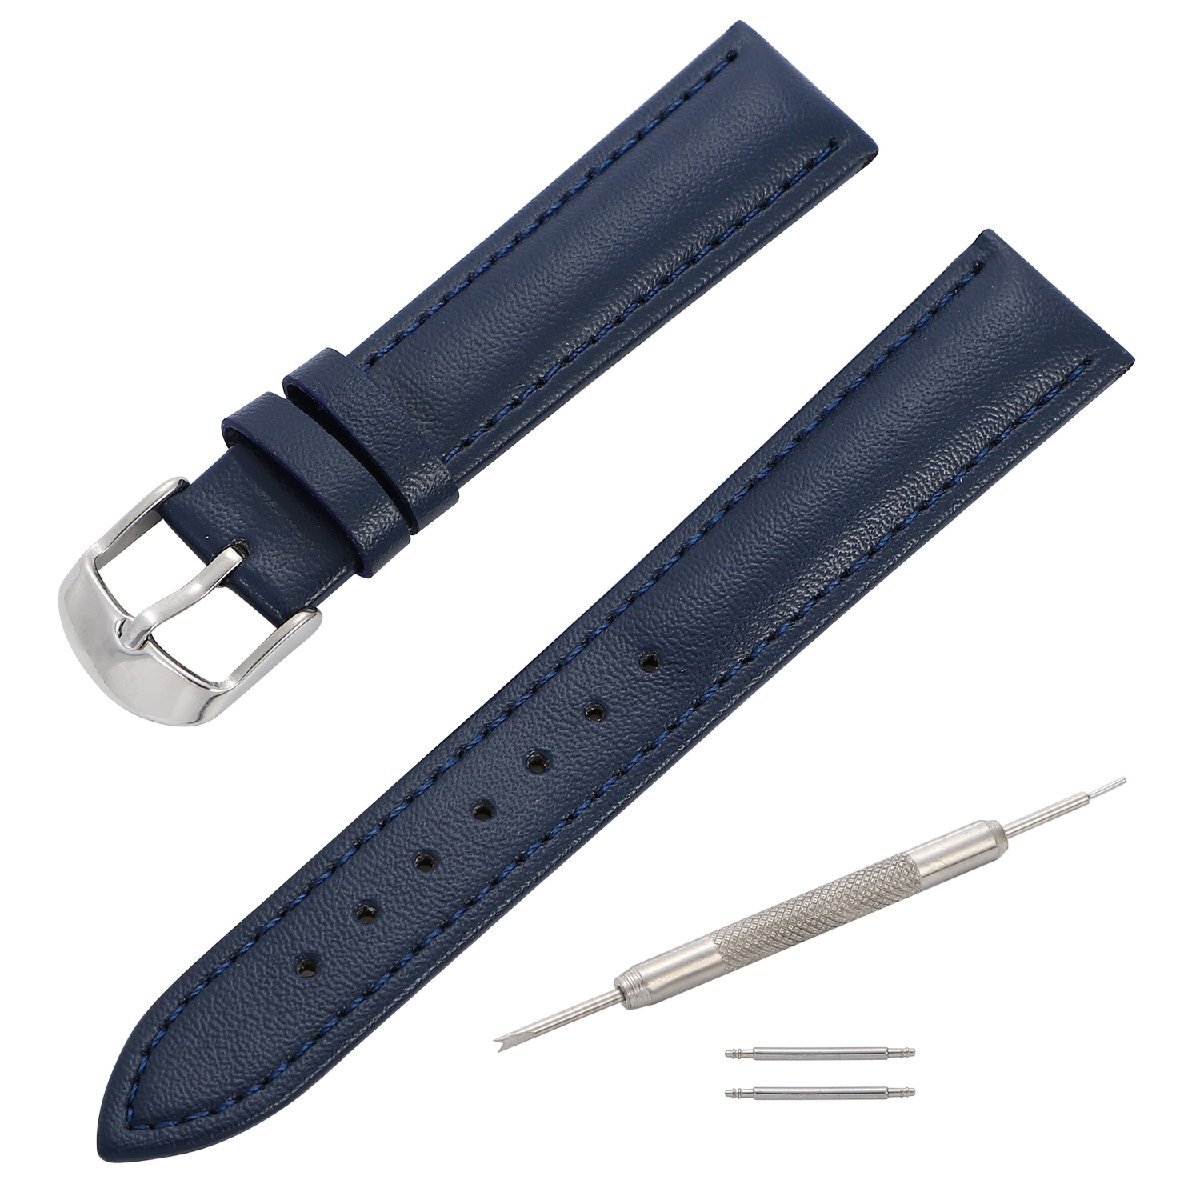  наручные часы ремень темно-синий голубой 14mm замена инструмент & spring палка есть телячья кожа мужской женский 